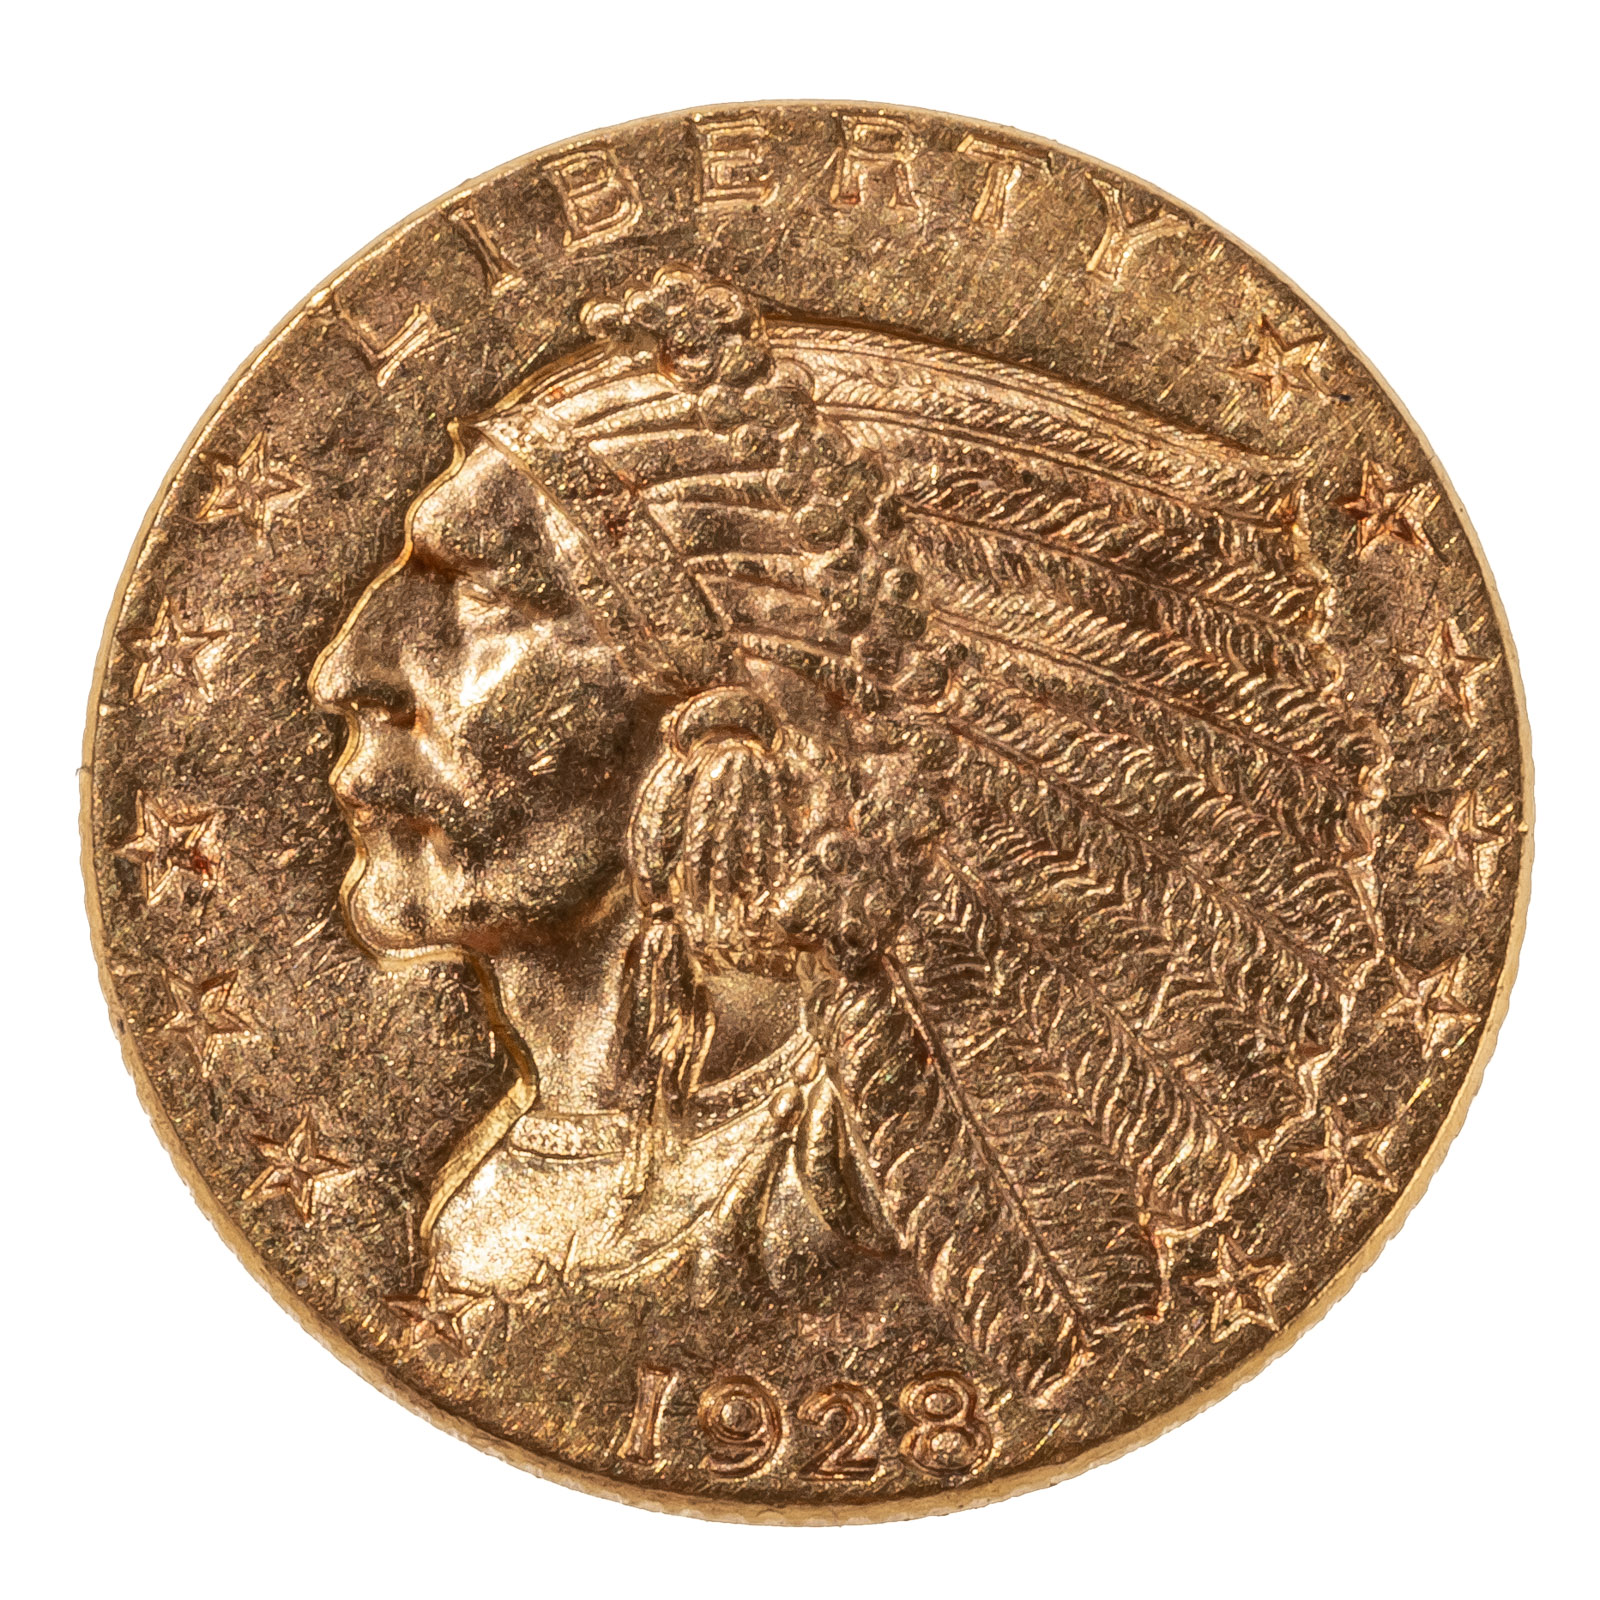 1928 2 50 GOLD INDIAN QUARTER 338e39